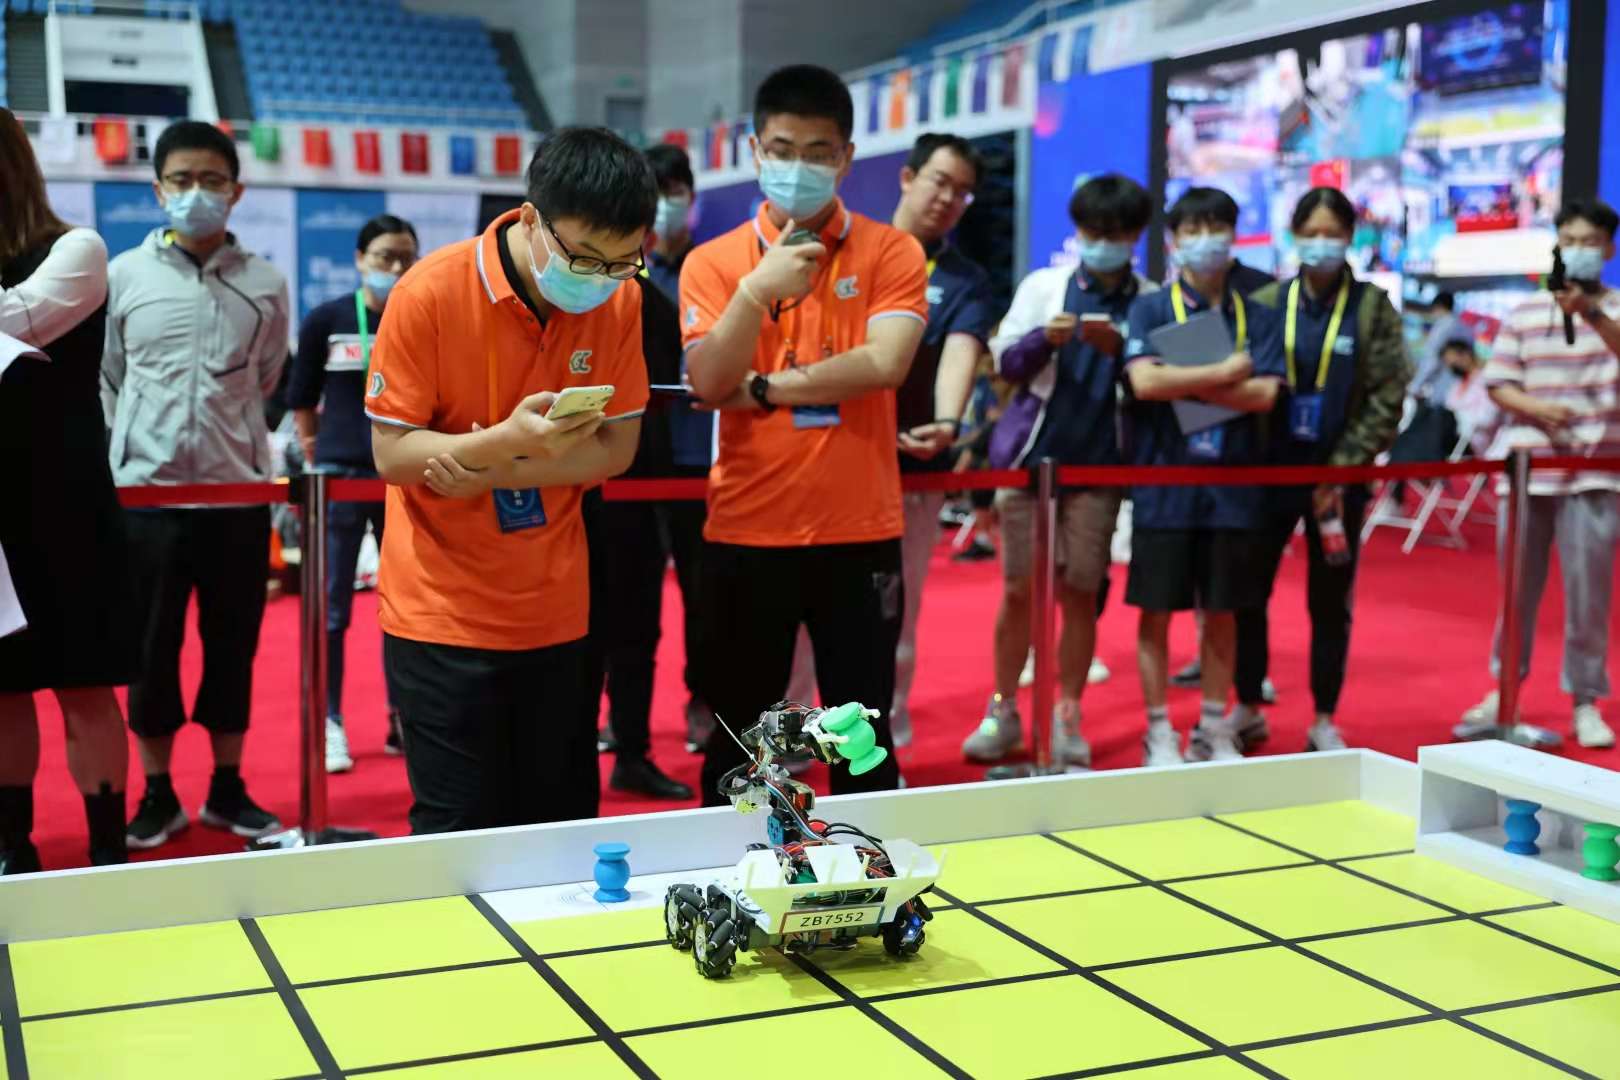 2021年中国大学生工程实践与创新能力大赛全国总决赛在京开幕